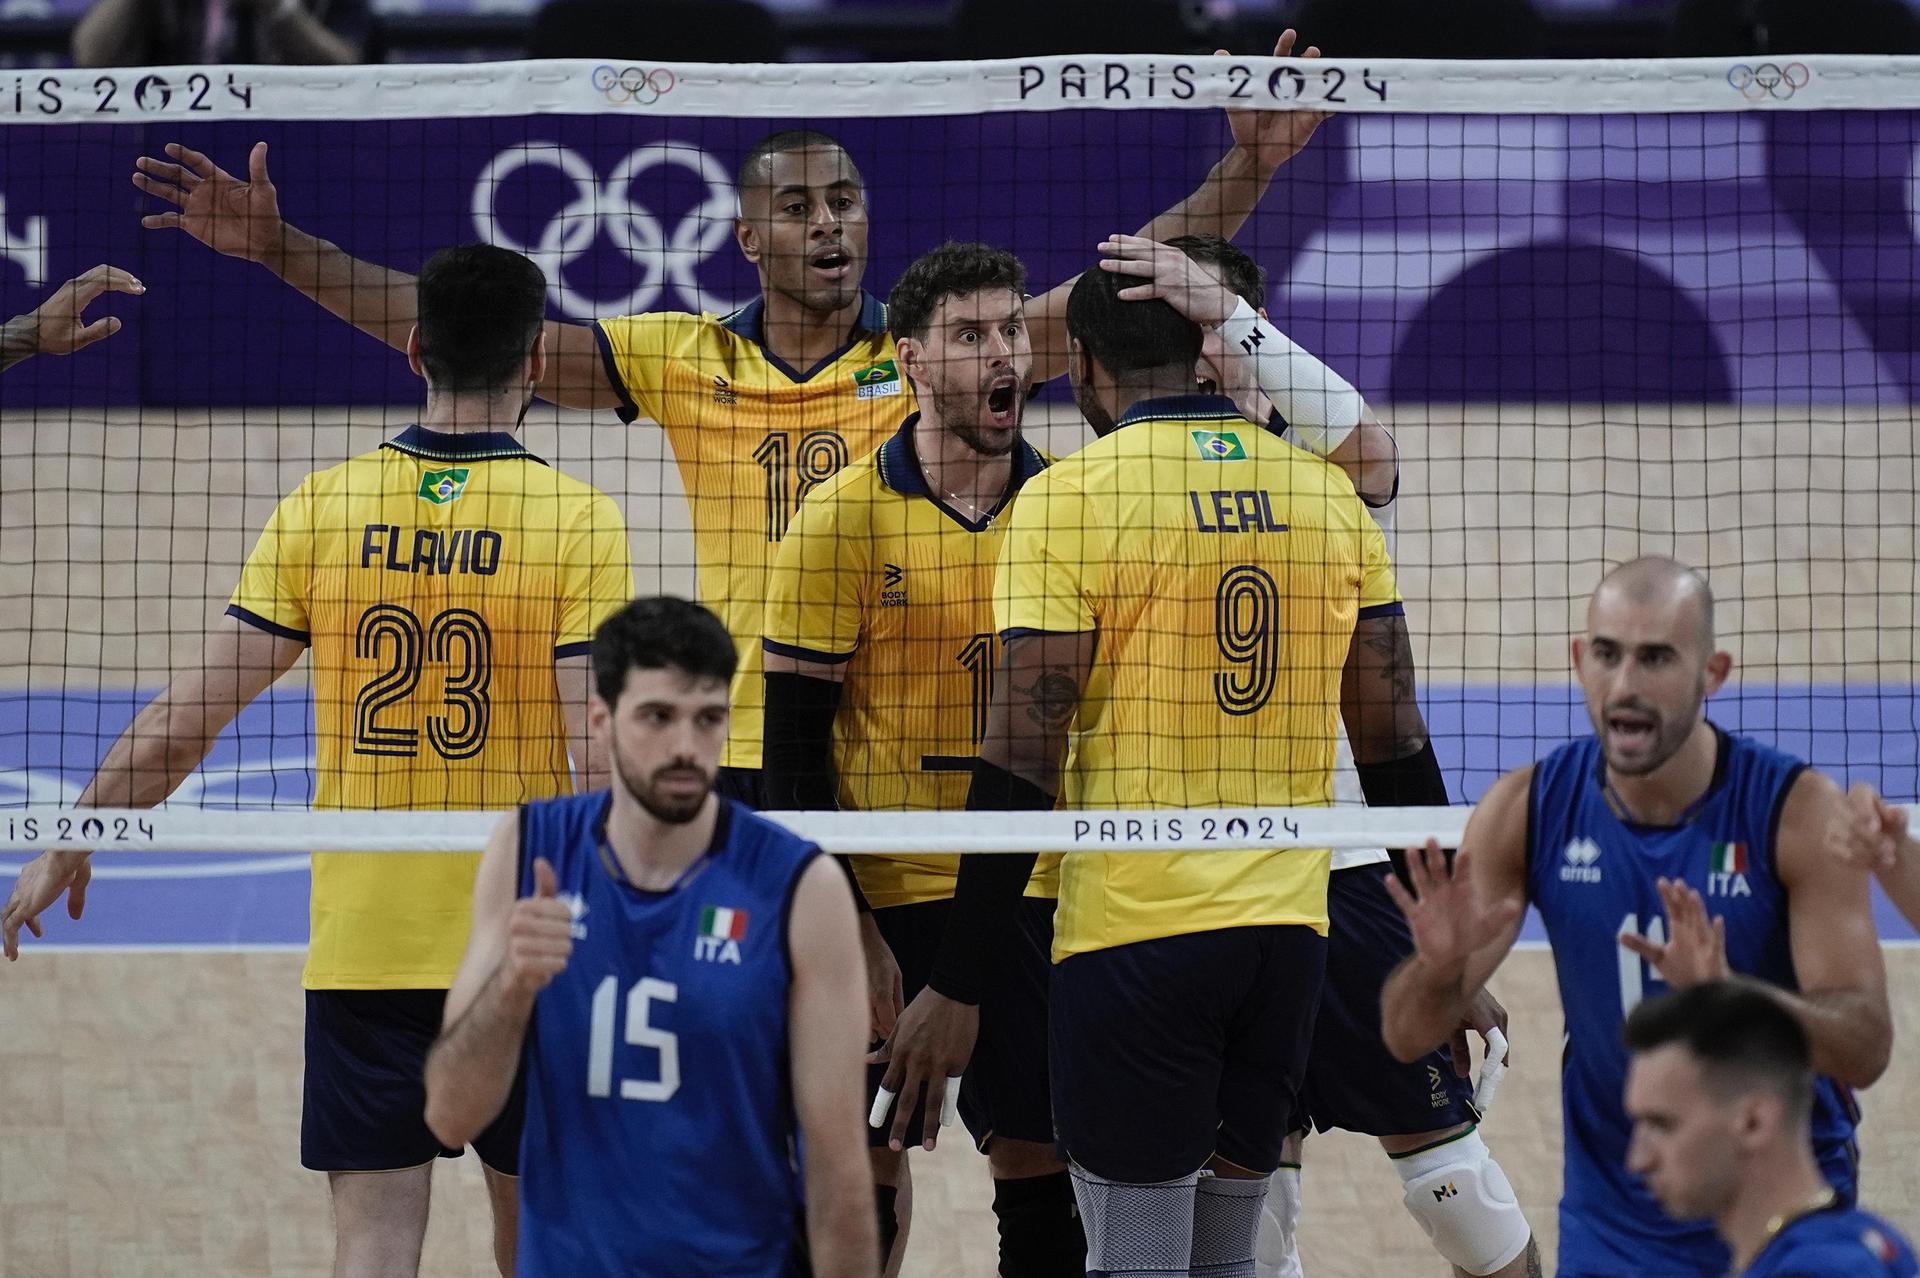 Jogadores do Brasil atrás da rede de vôlei comemoram ponto marcado